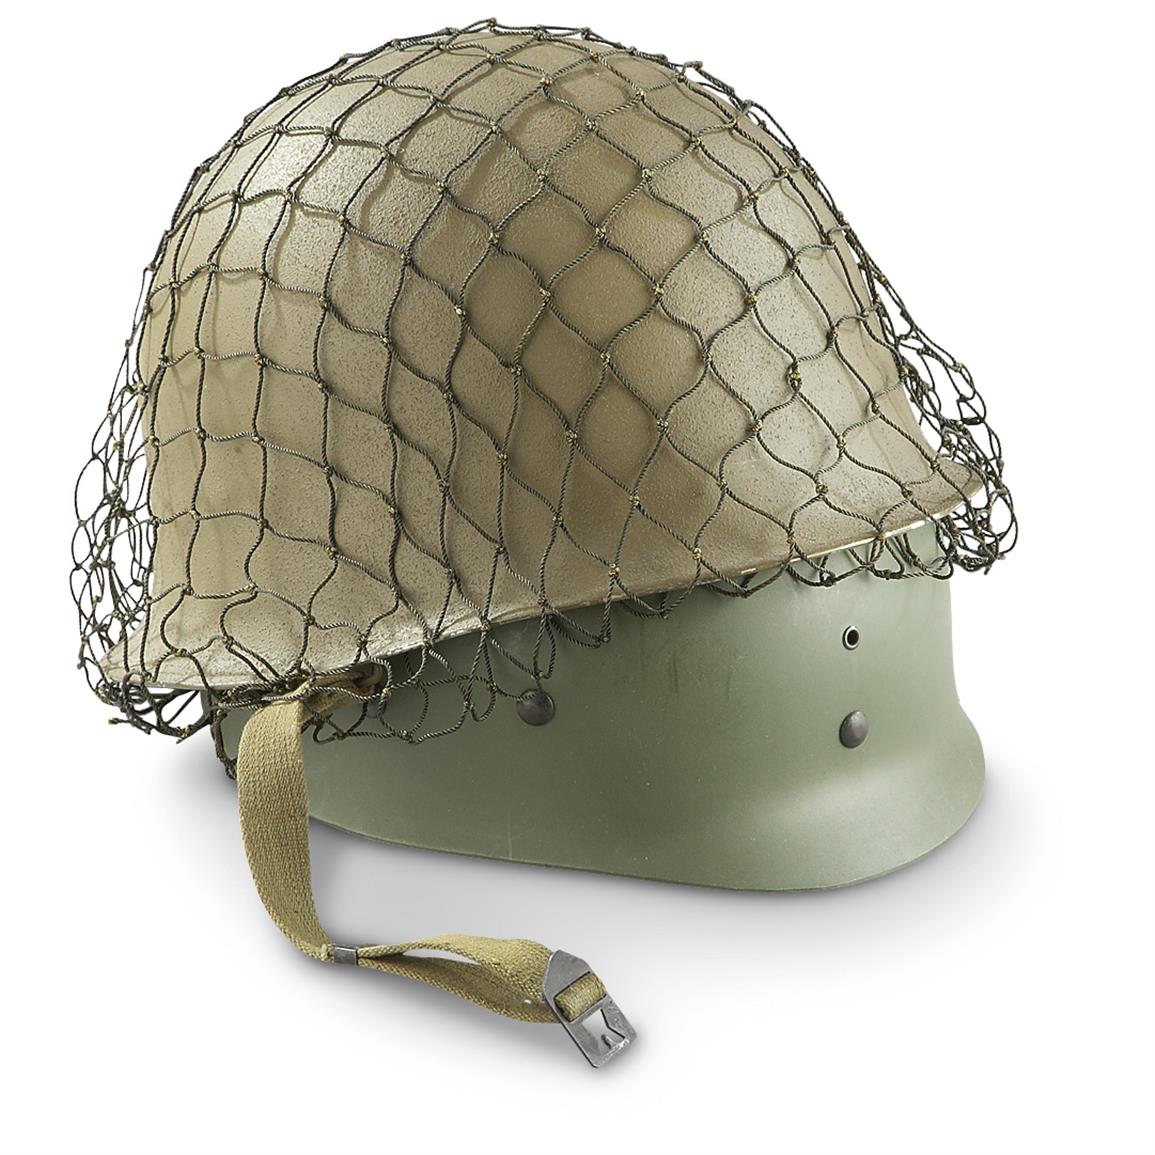 New Belgian Military Surplus Steel Helmet